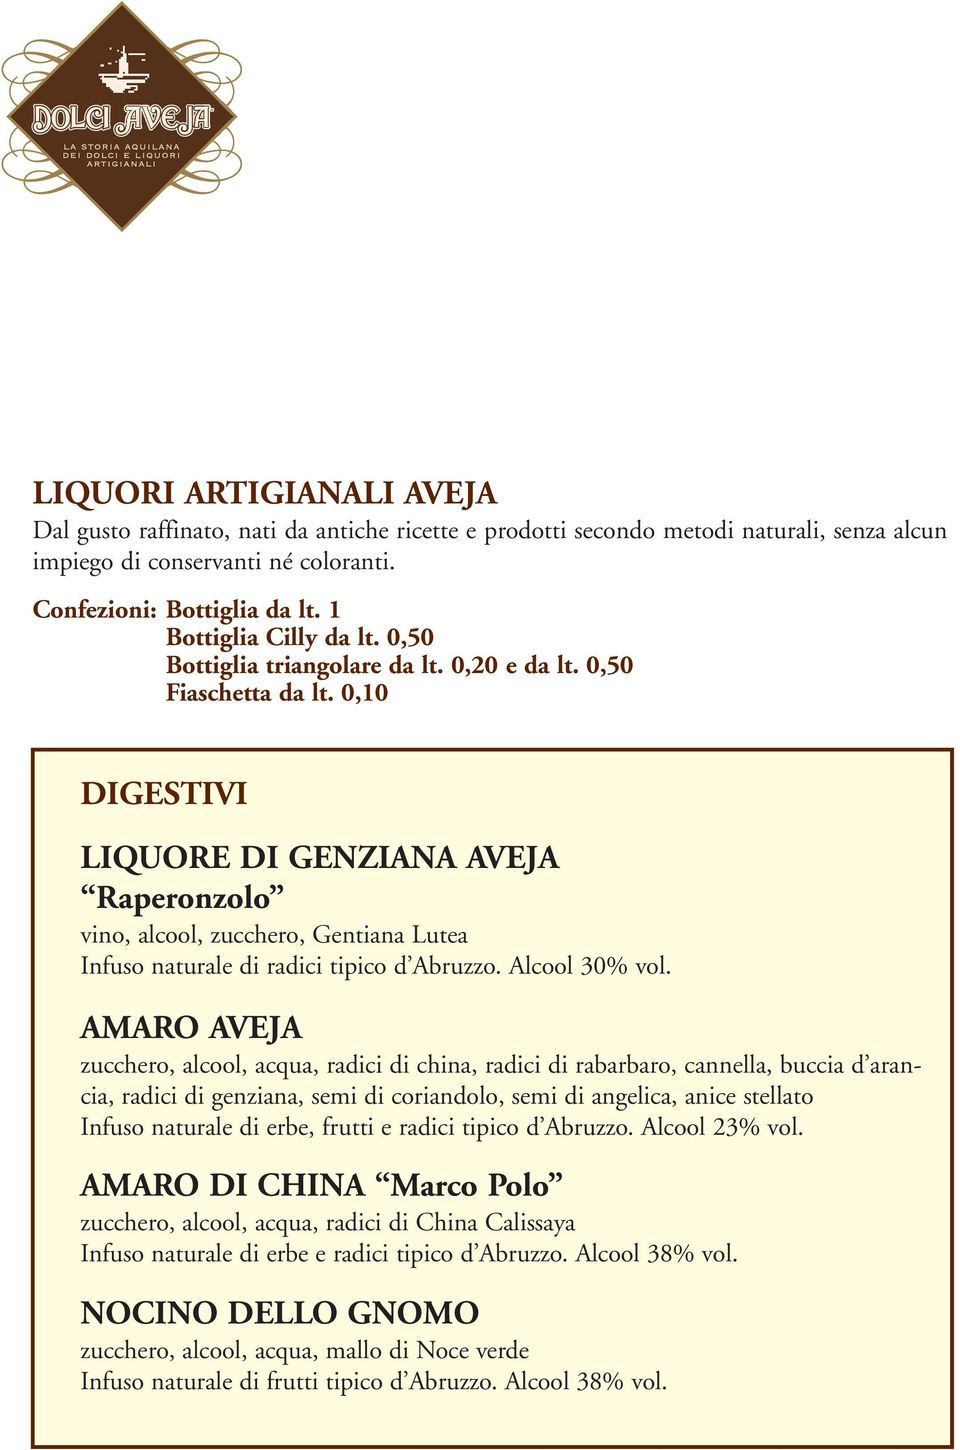 0,10 DIGESTIVI LIQUORE DI GENZIANA AVEJA Raperonzolo vino, alcool, zucchero, Gentiana Lutea Infuso naturale di radici tipico d Abruzzo. Alcool 30% vol.